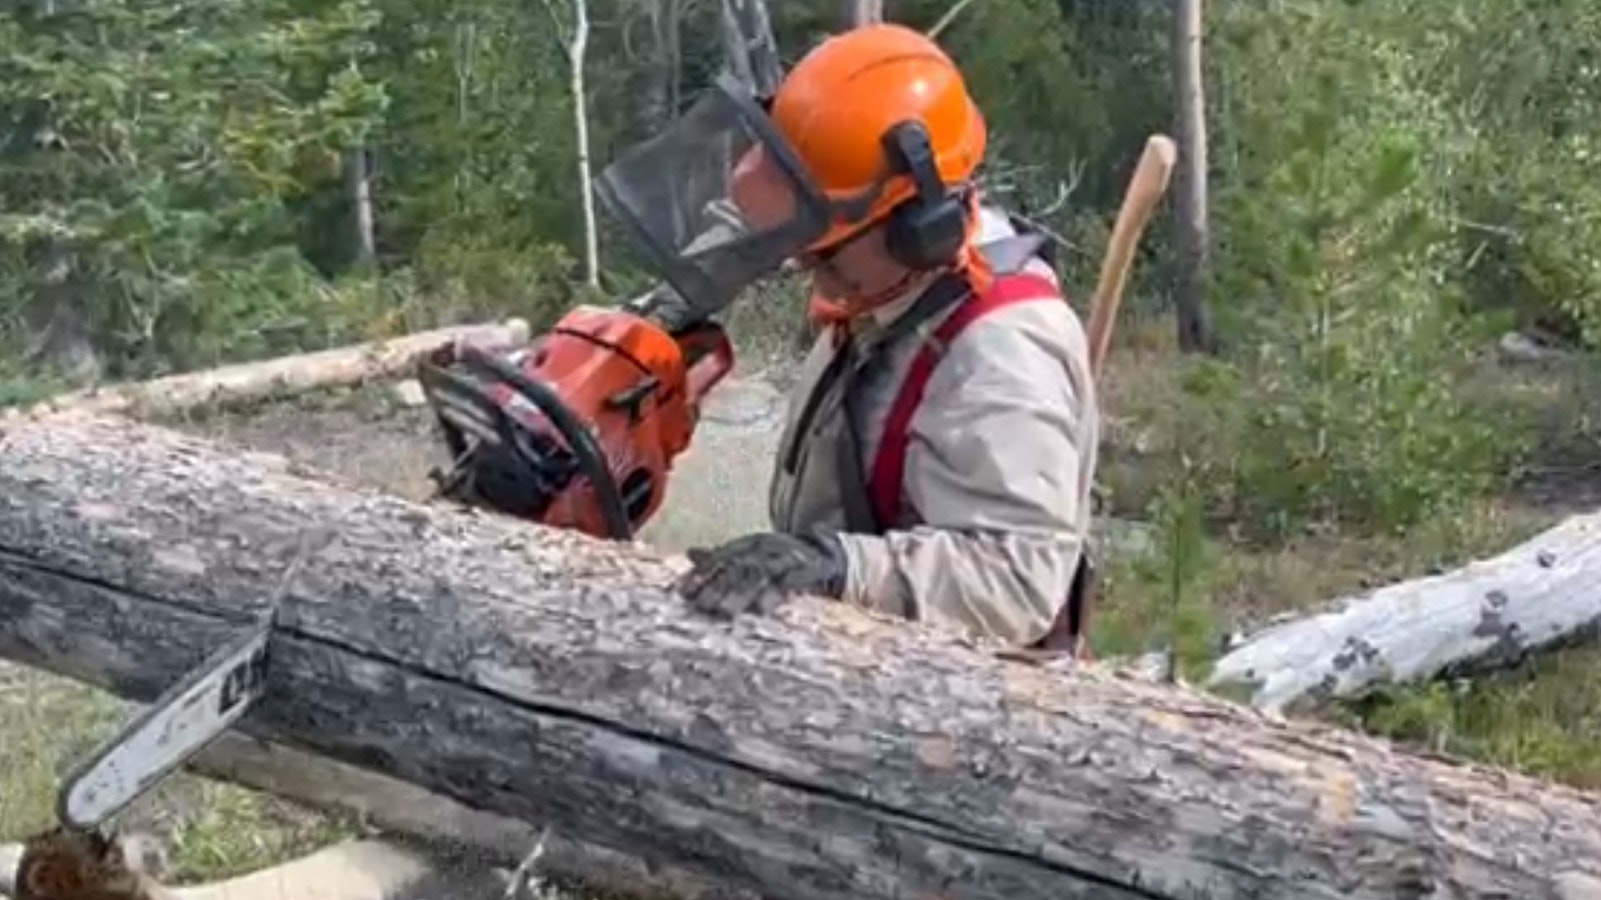 Mark cutting firewood 10 7 23